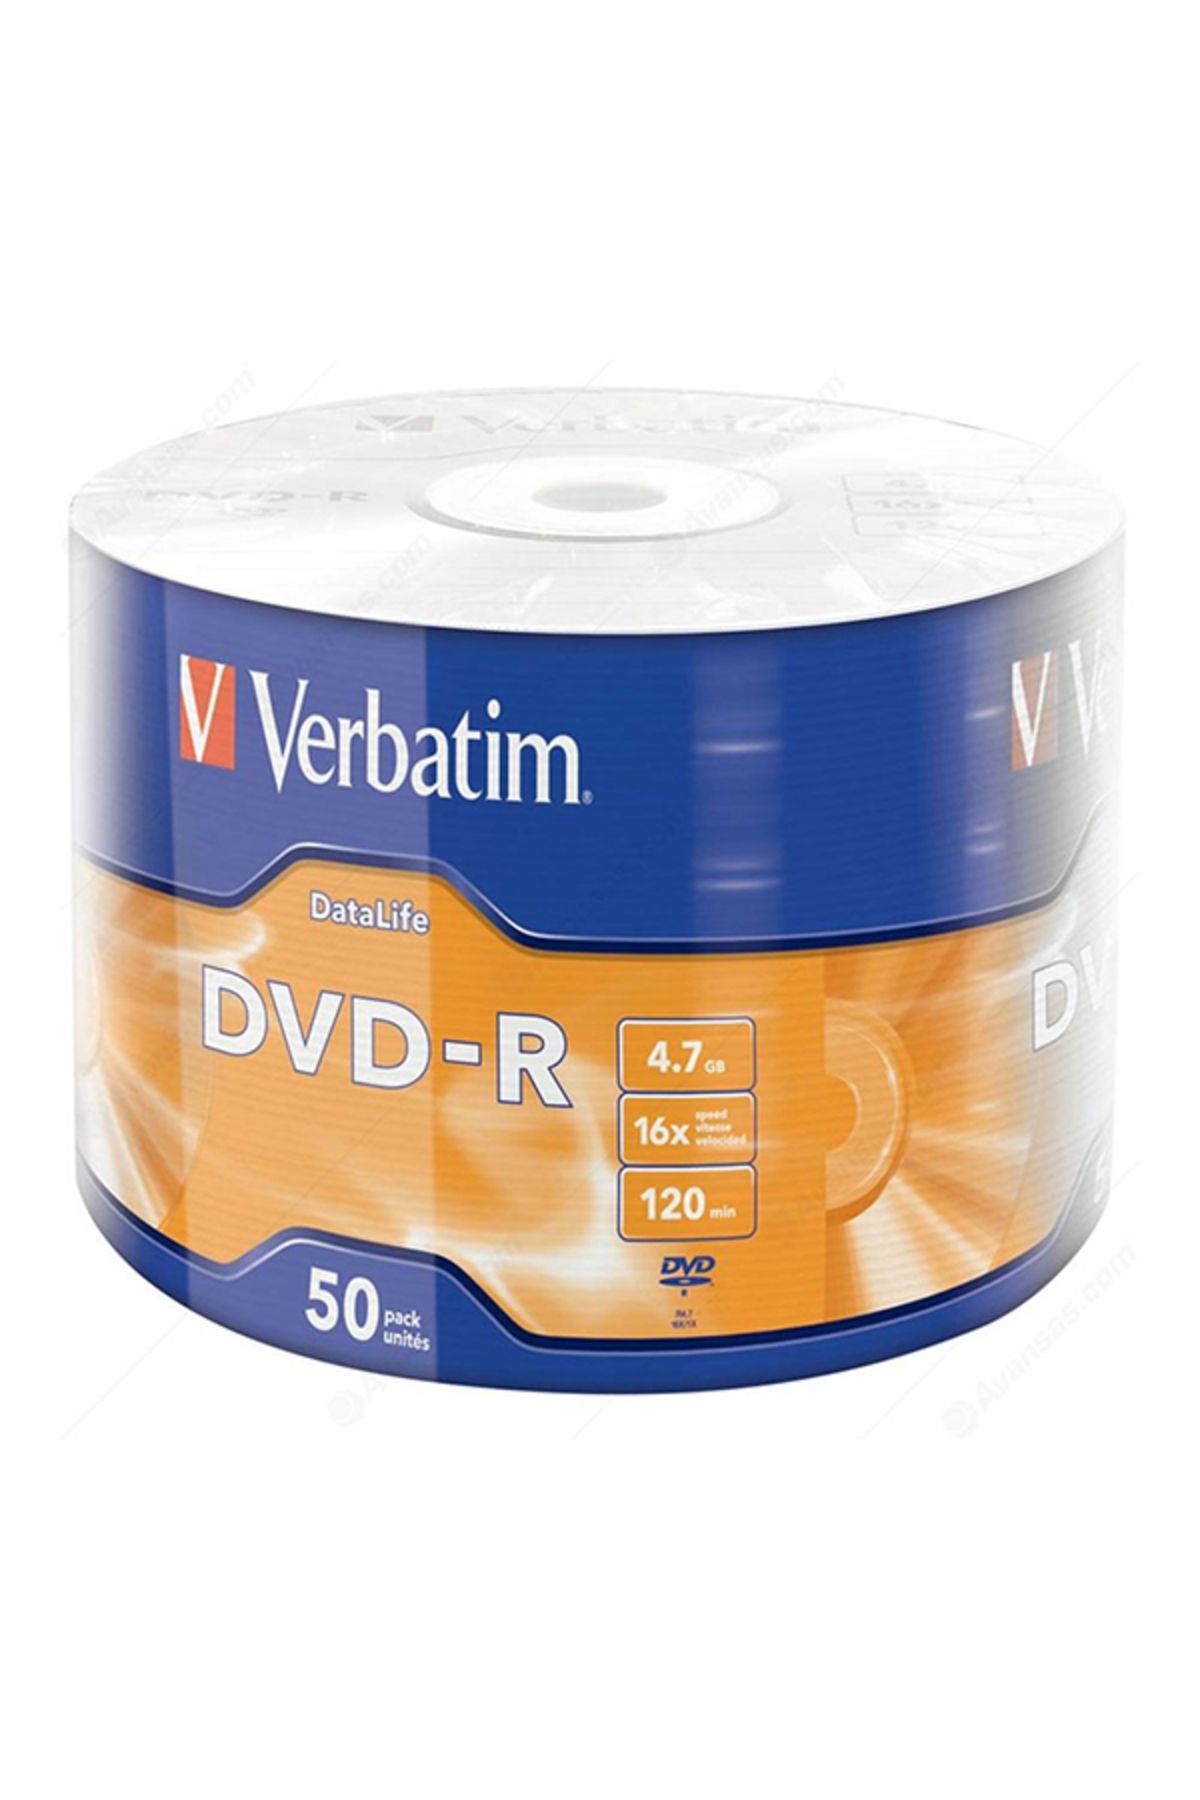 MELFSHOP VERBATİM DVD-R 4.7GB 16X 120DK 50Lİ PAKET (81)